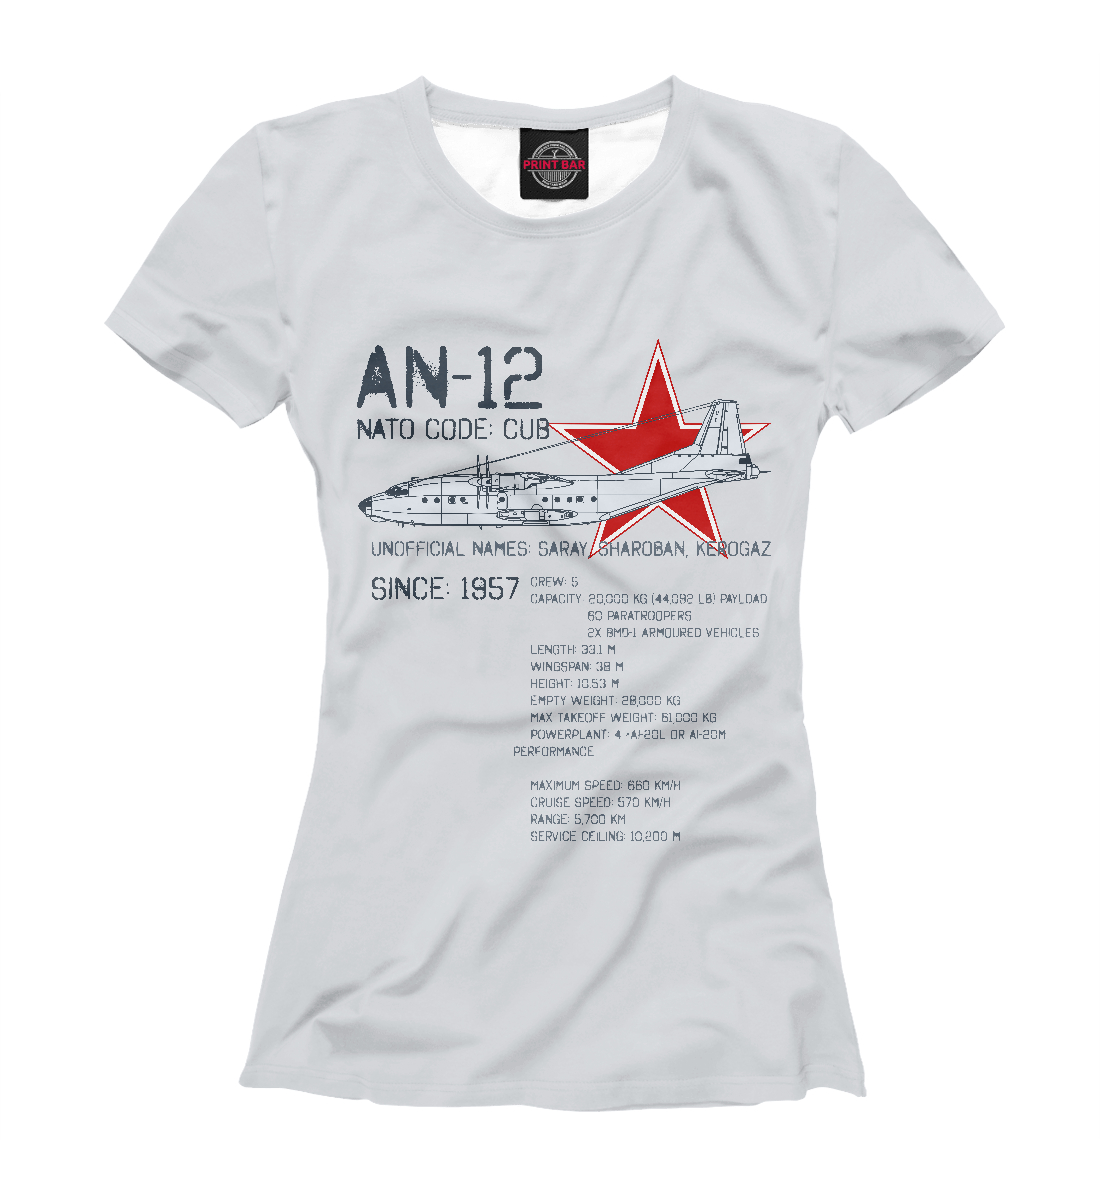 Футболка Ан-12 для женщин, артикул: APN-726530-fut-1mp